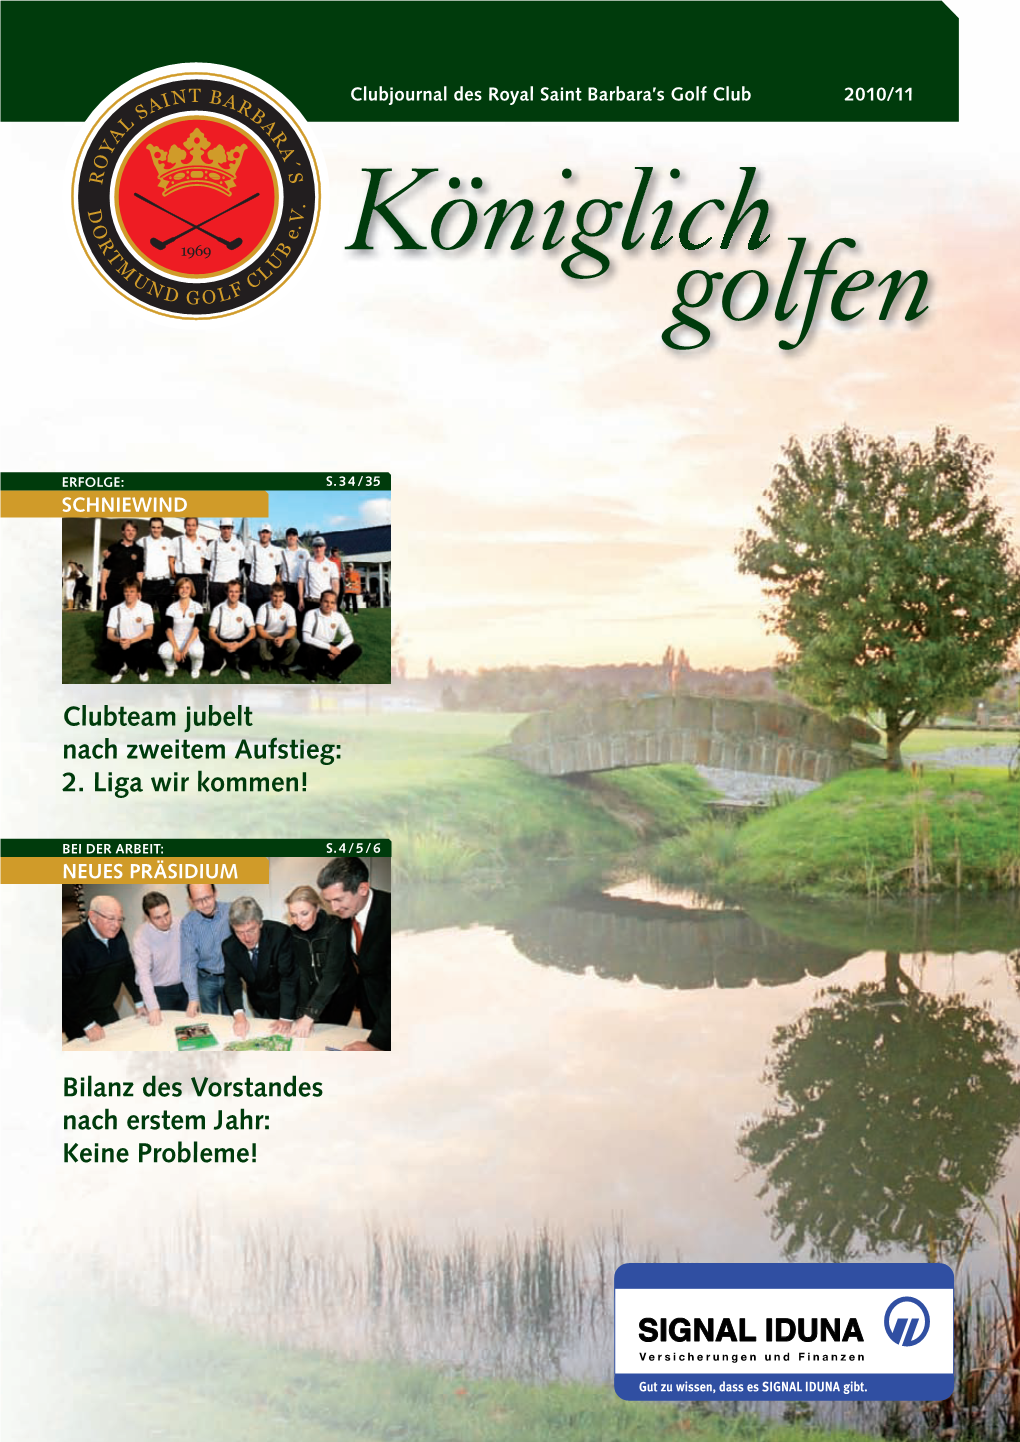 Clubmagazin 2011 Royal Dortmund Golf Club